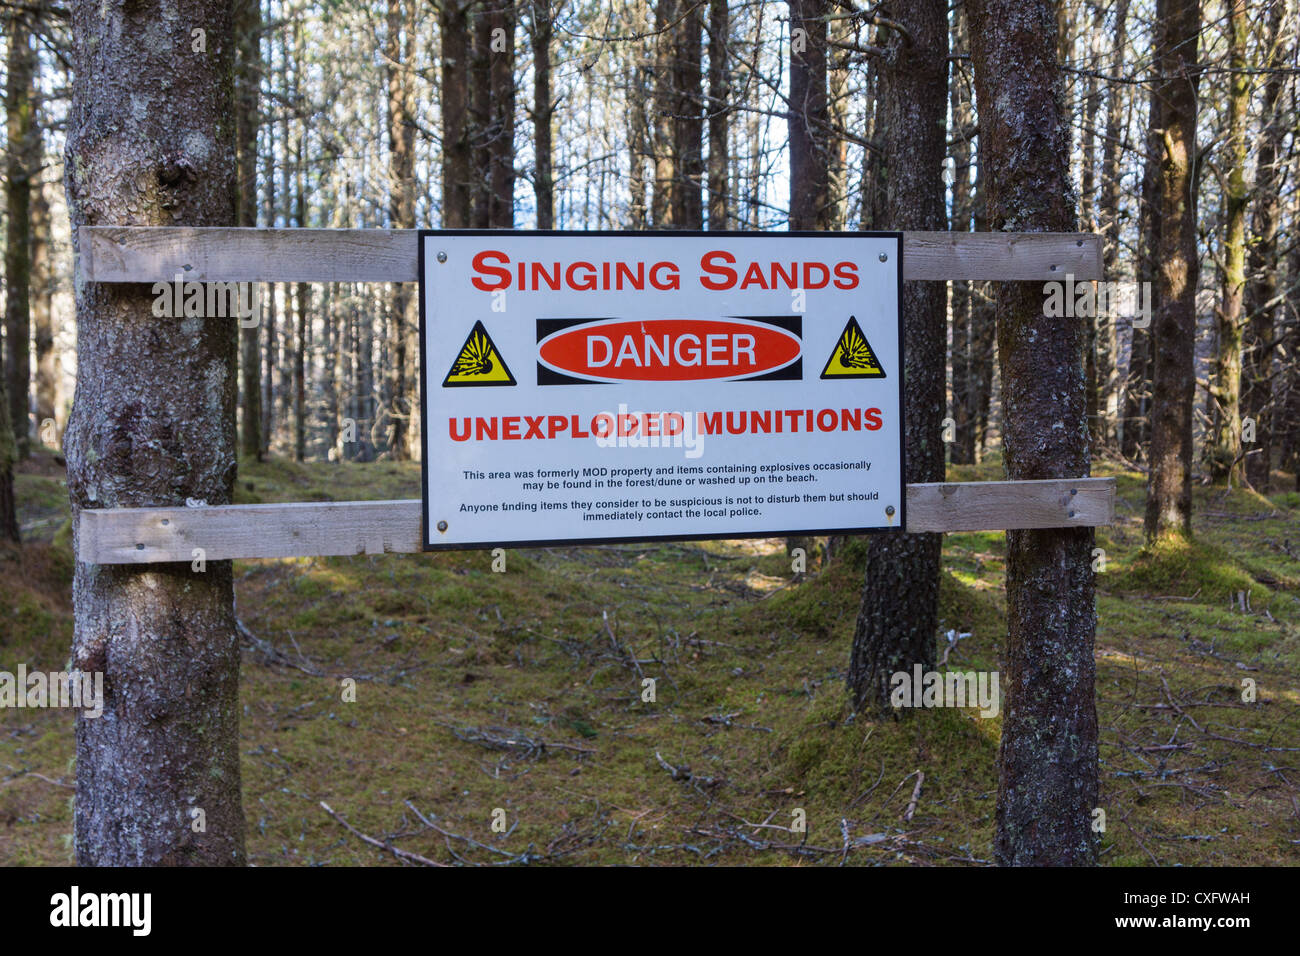 Un panneau d'avertissement à l'approche de la baie de Singing Sands de matières dangereuses des munitions non explosées. Banque D'Images